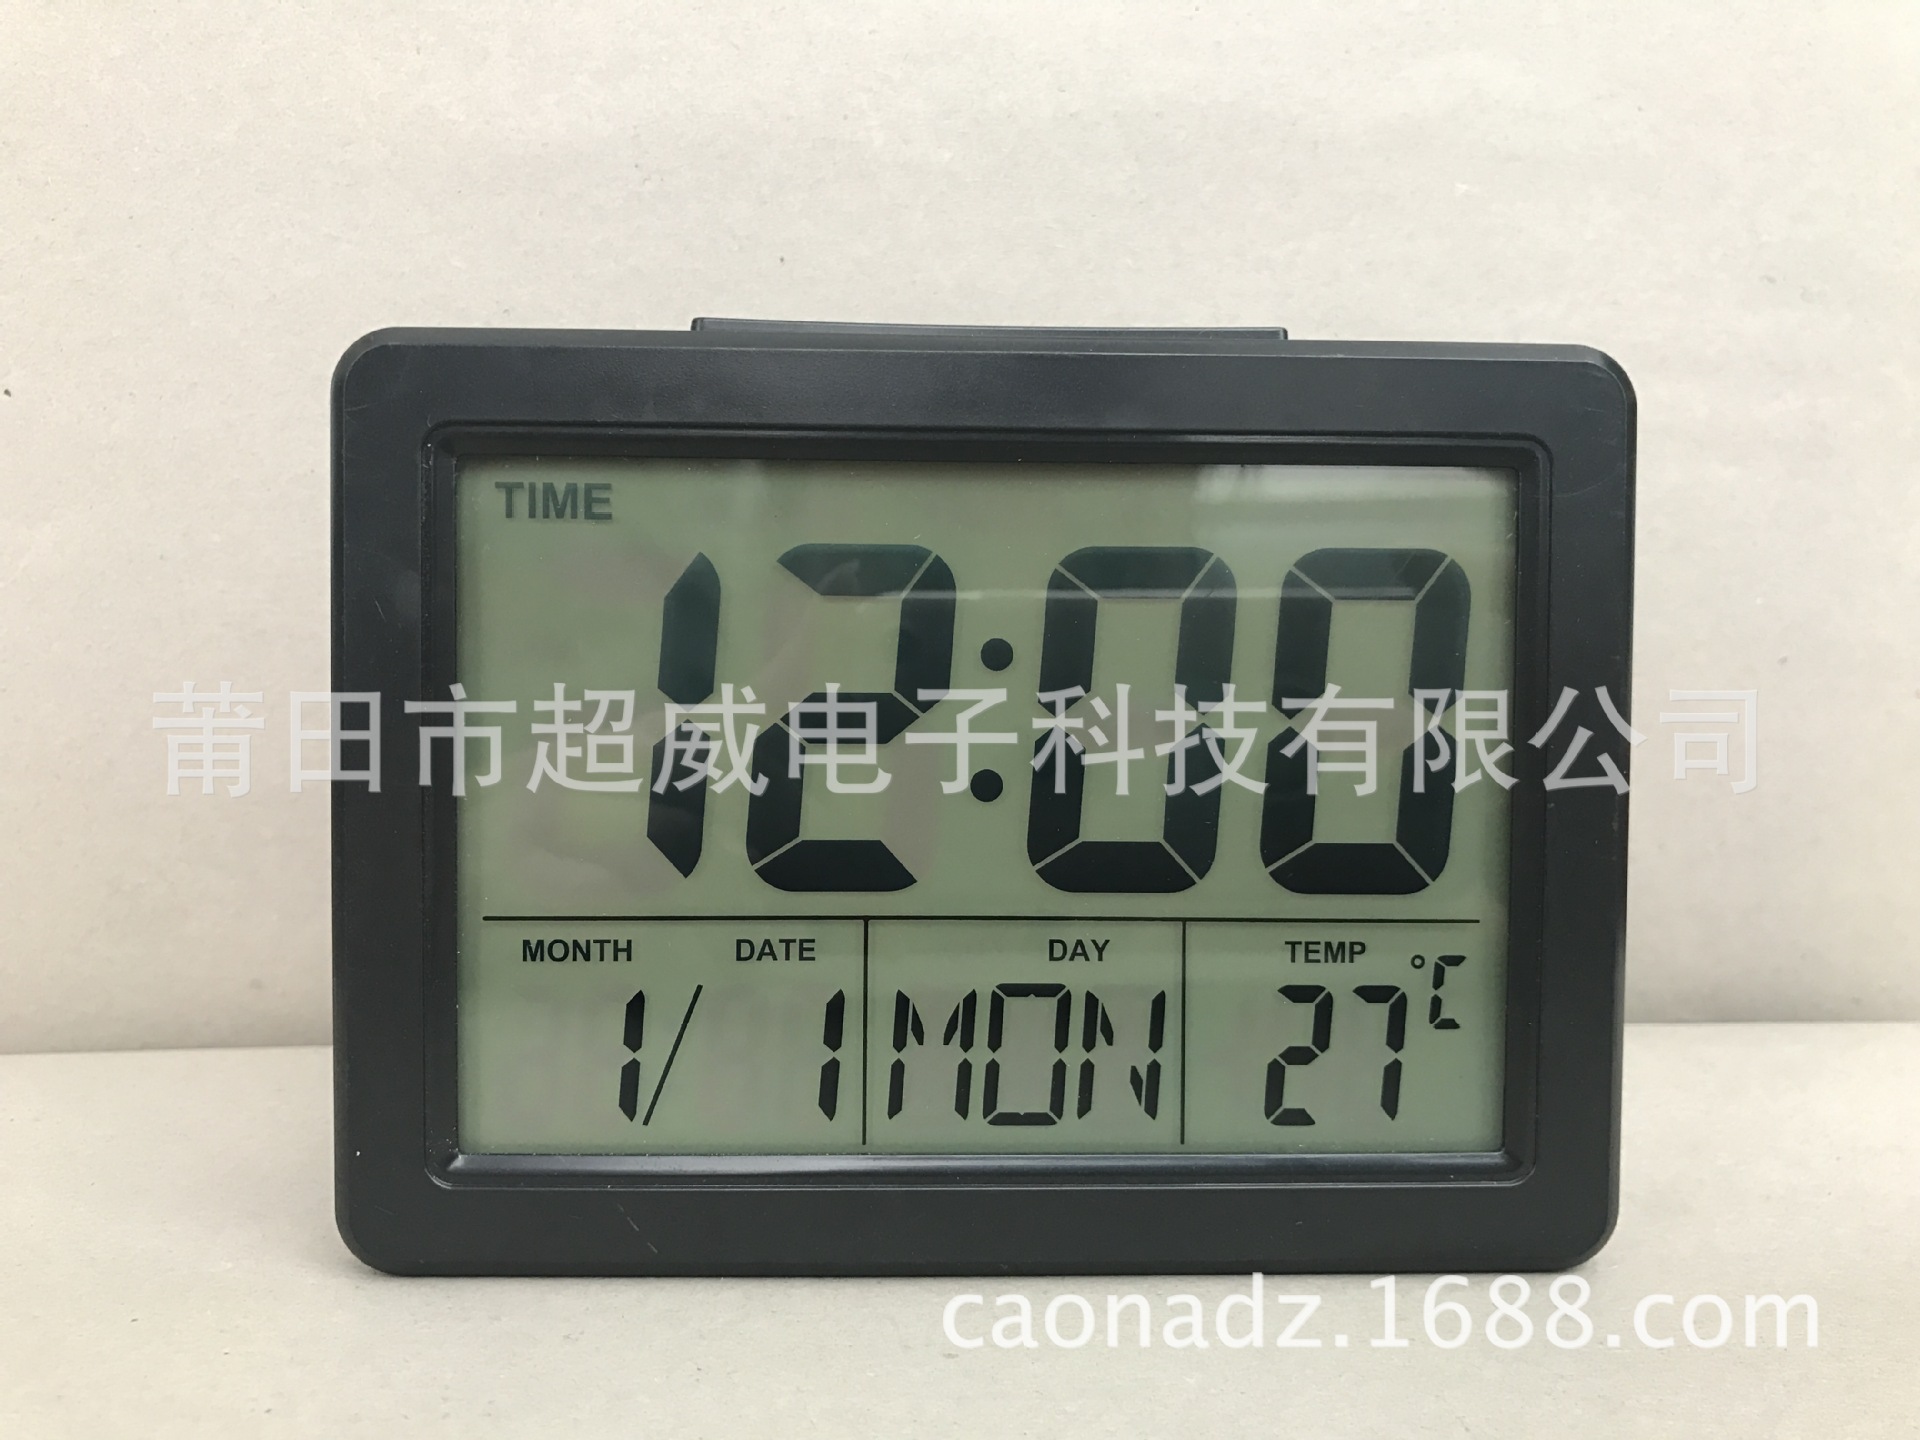 彩色電子鐘 時尚鬧鐘 多功能聲控鐘 廠家直供 DS-2619